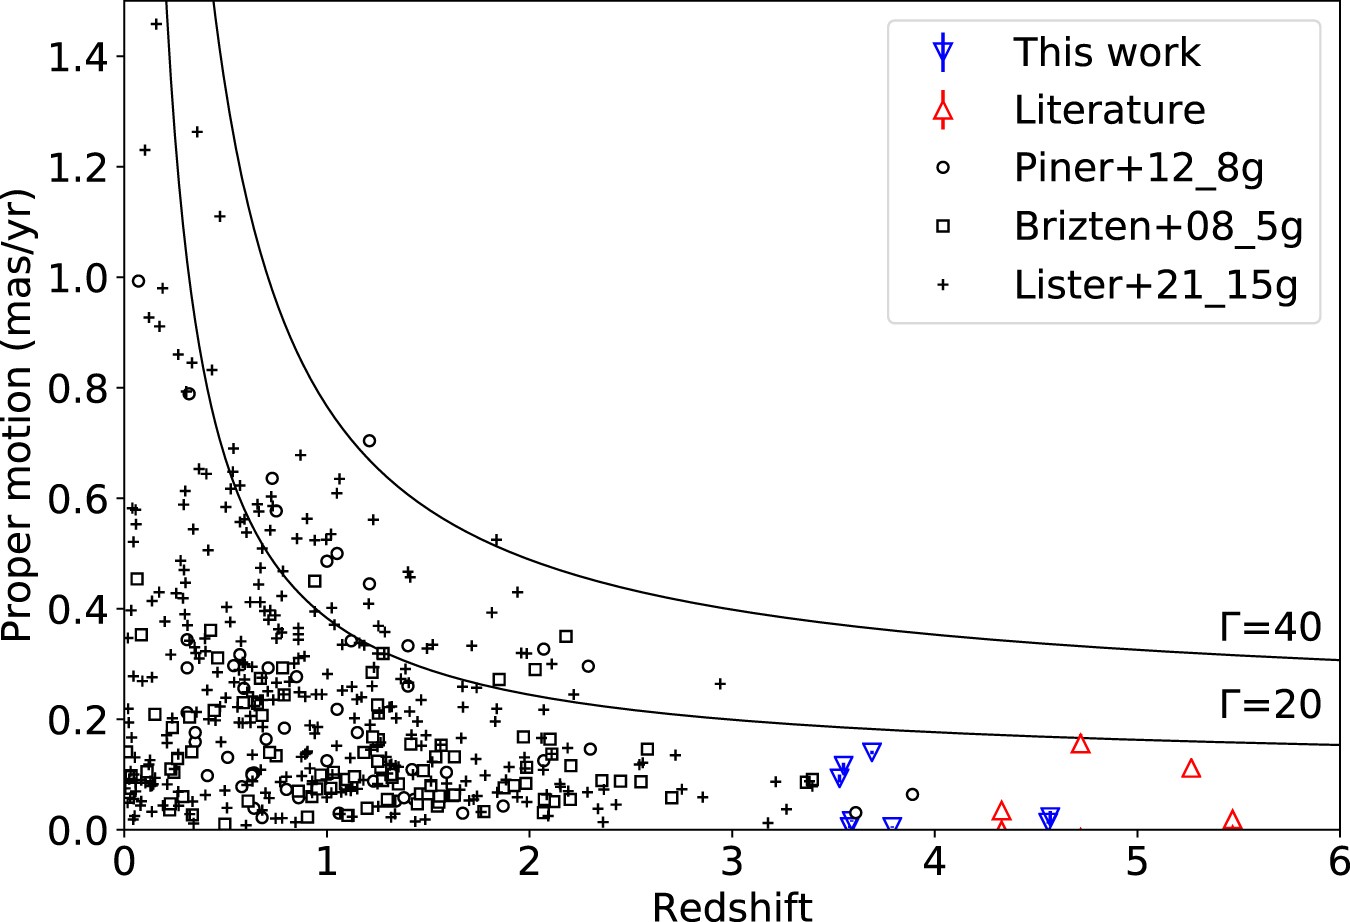 Az új tanulmányban vizsgált rádiókvazárok (kék háromszögek) plazmakifúvásainak látszó sajátmozgása ezred ívmásodperc/év egységekben, a vízszintes tengelyen a vöröseltolódással. Míg a szakirodalomban rengeteg mérés áll rendelkezésre közelebbi rádiókvazárokra (fekete szimbólumok), addig z>3,5 értékeknél eddig alig voltak adatok. A két folytonos görbe azt jelzi, hogy a vöröseltolódás függvényében mekkora lenne a megfigyelhető sajátmozgás maximális értéke a kiáramló plazma sebességére jellemző Lorentz-faktor (Γ) 20-as, illetve 40-es értéke mellett. Ha netán ezen görbék fölötti pontokat mérnénk nagy vöröseltolódásoknál, vagyis a grafikon jobb széle felé, akkor vagy a kvazárokkal, vagy a kozmológiai modellel lenne valami furcsaság. (Forrás: Y. Zhang et al. 2022) 